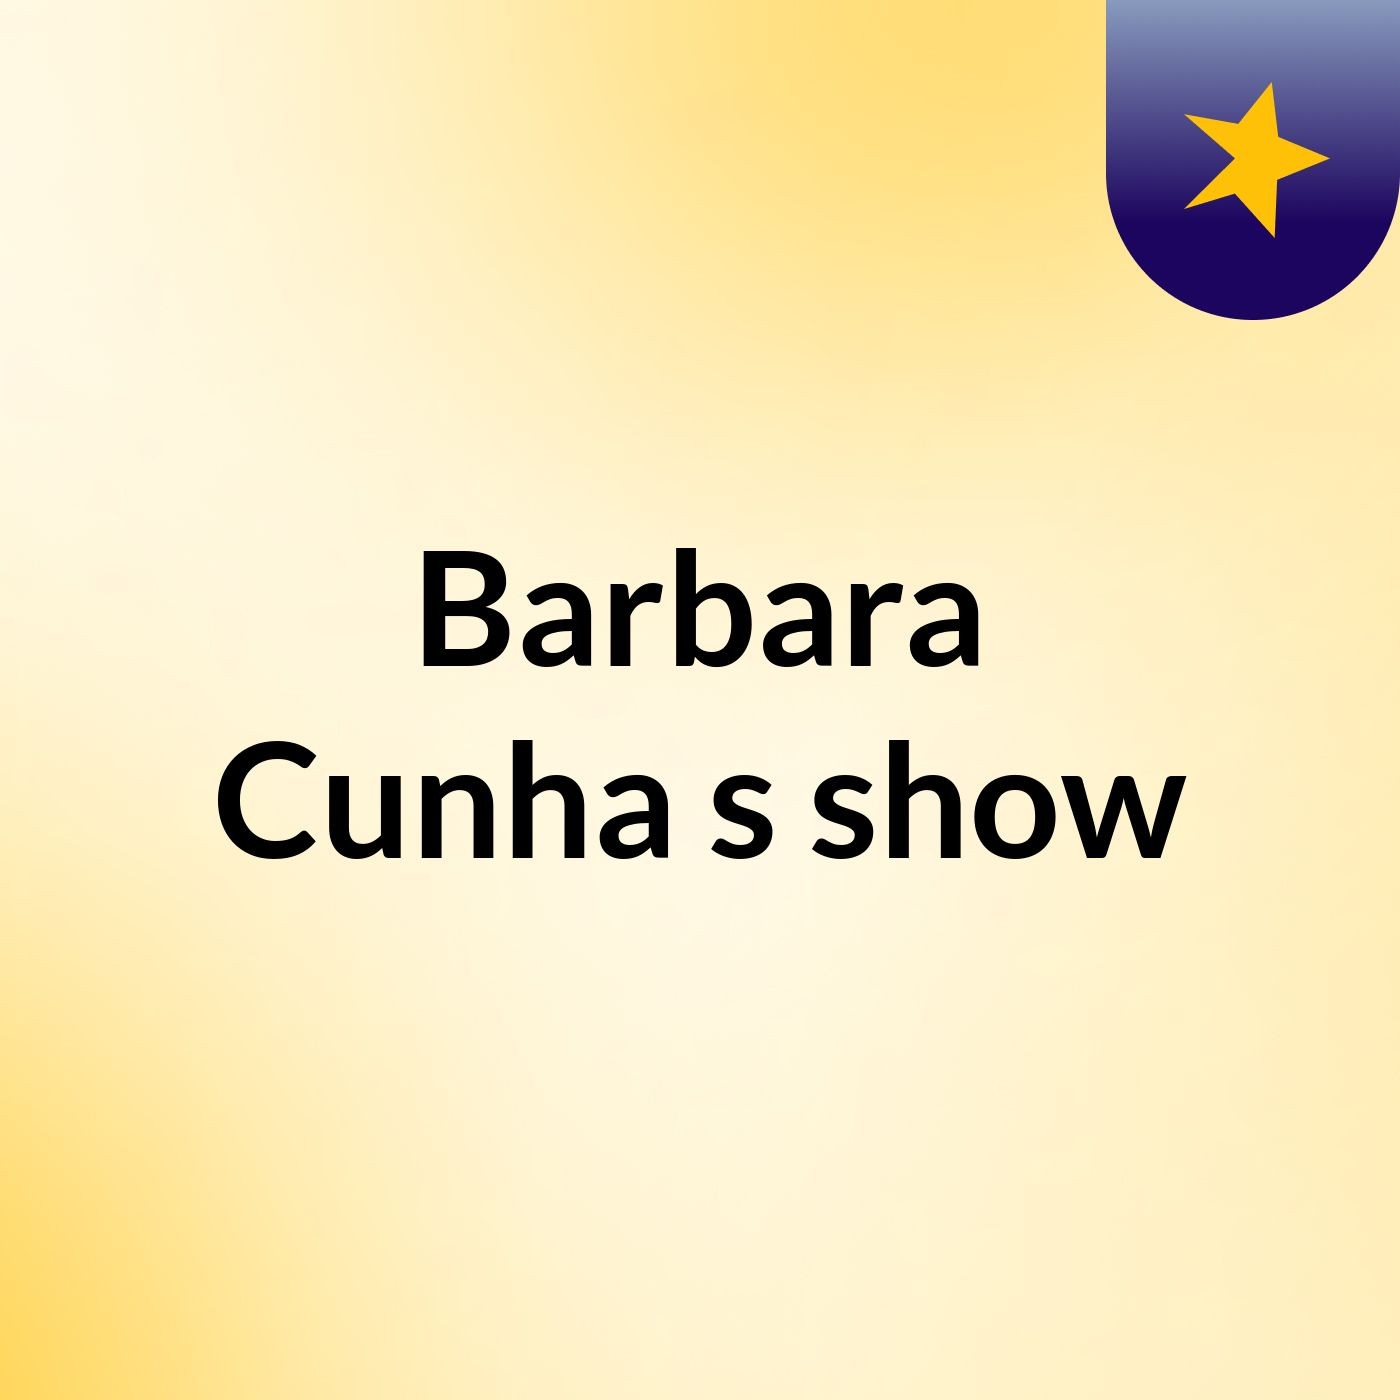 Barbara Cunha's show